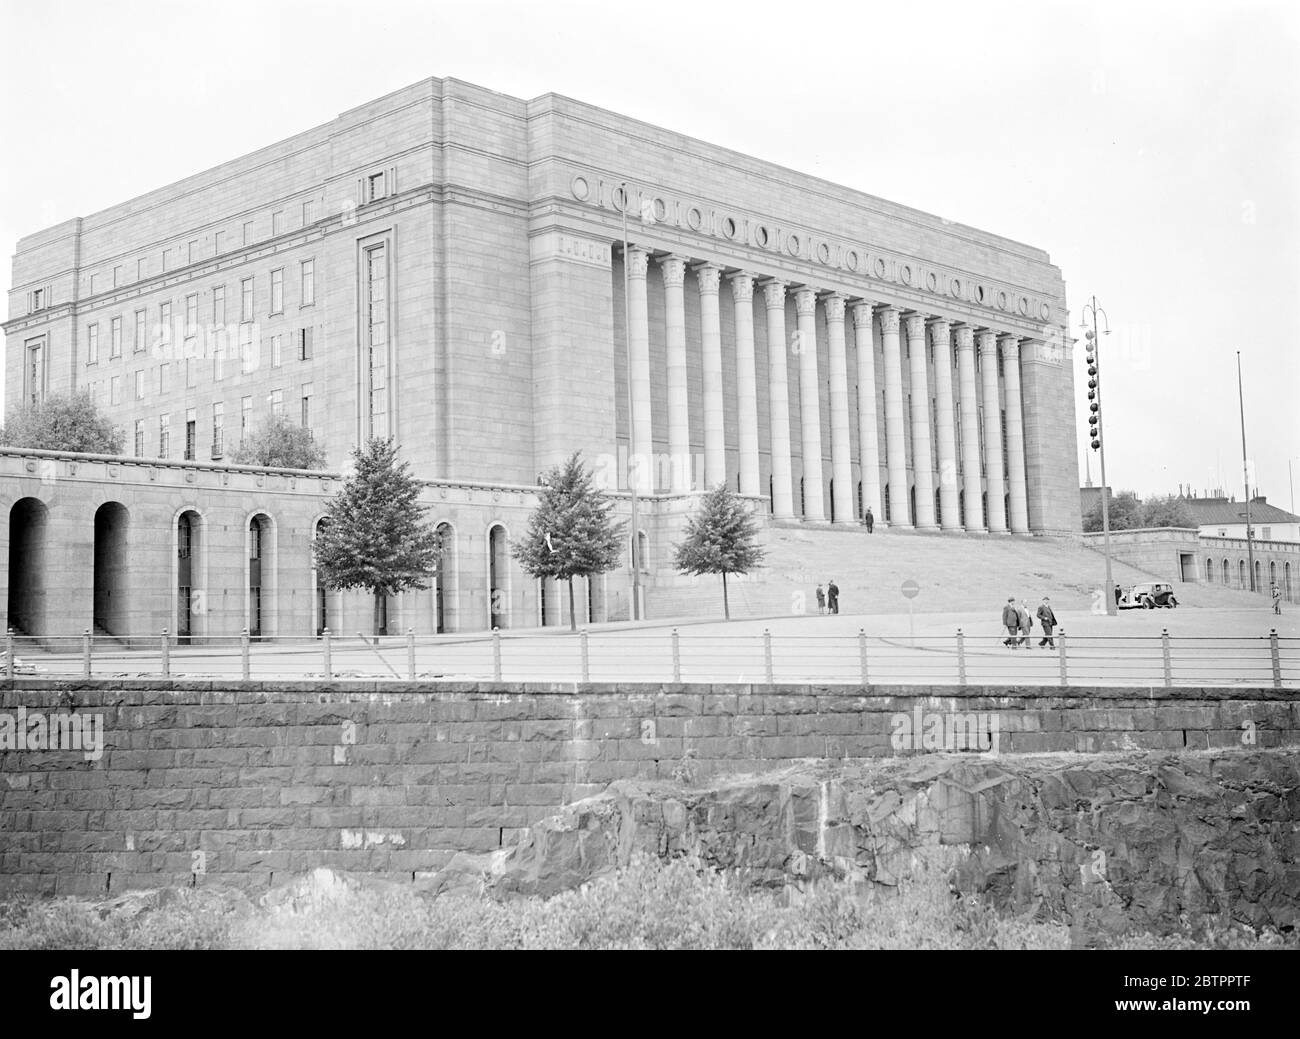 Helsinki et personnalités. Le Parlement finlandais à helsinki, l'un des bâtiments modernes les plus célèbres au monde. Banque D'Images